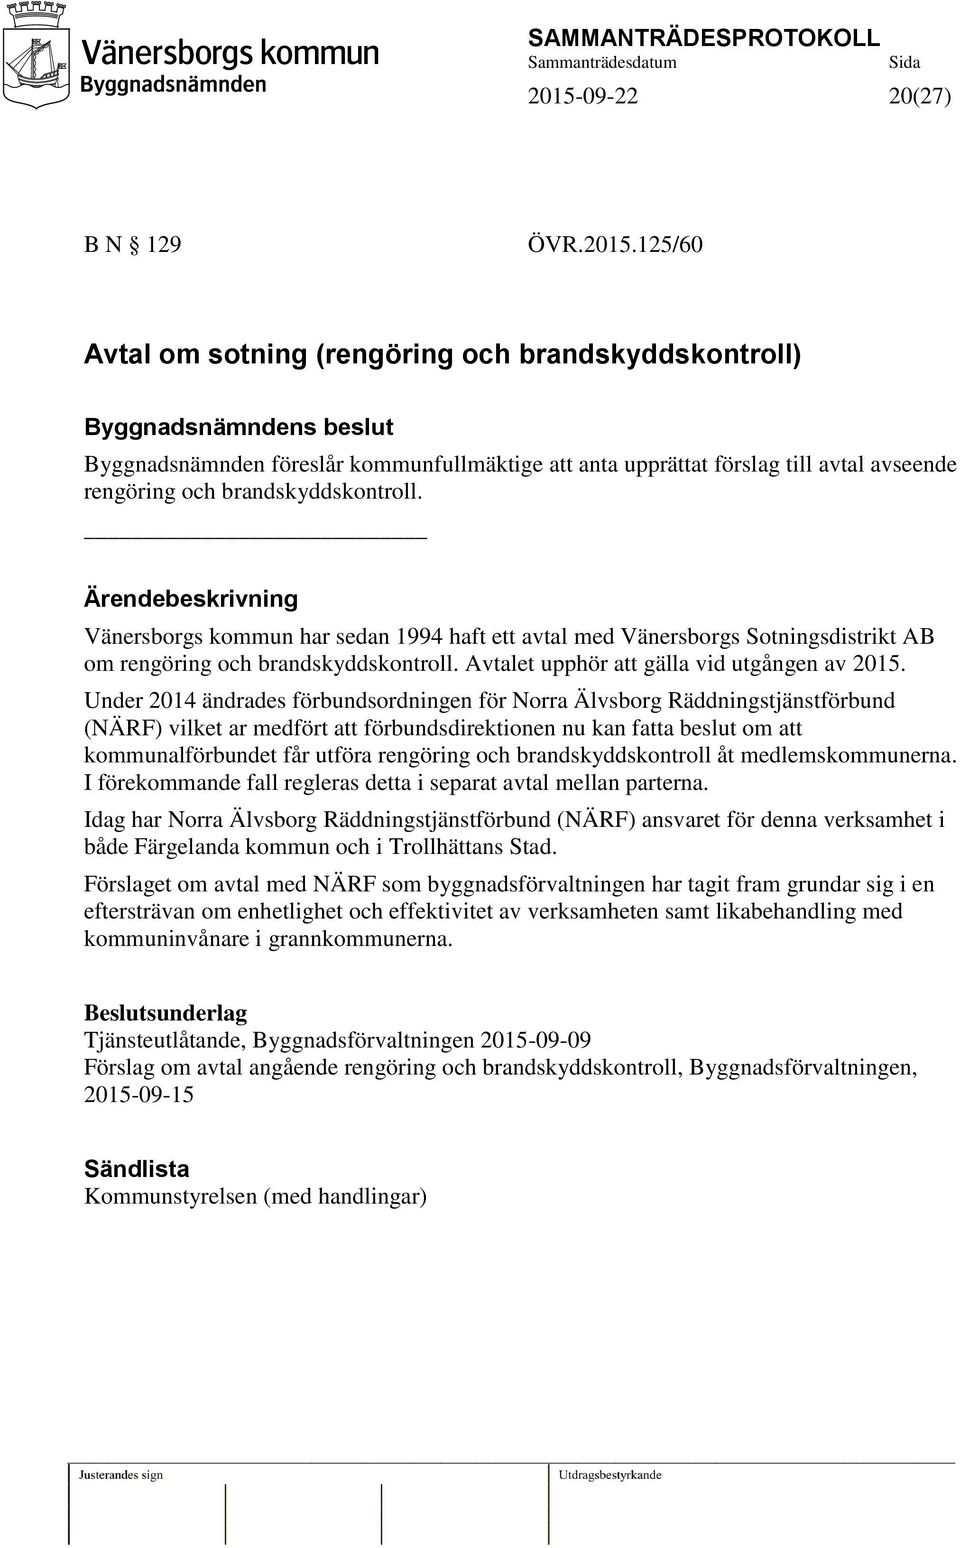 Under 2014 ändrades förbundsordningen för Norra Älvsborg Räddningstjänstförbund (NÄRF) vilket ar medfört att förbundsdirektionen nu kan fatta beslut om att kommunalförbundet får utföra rengöring och